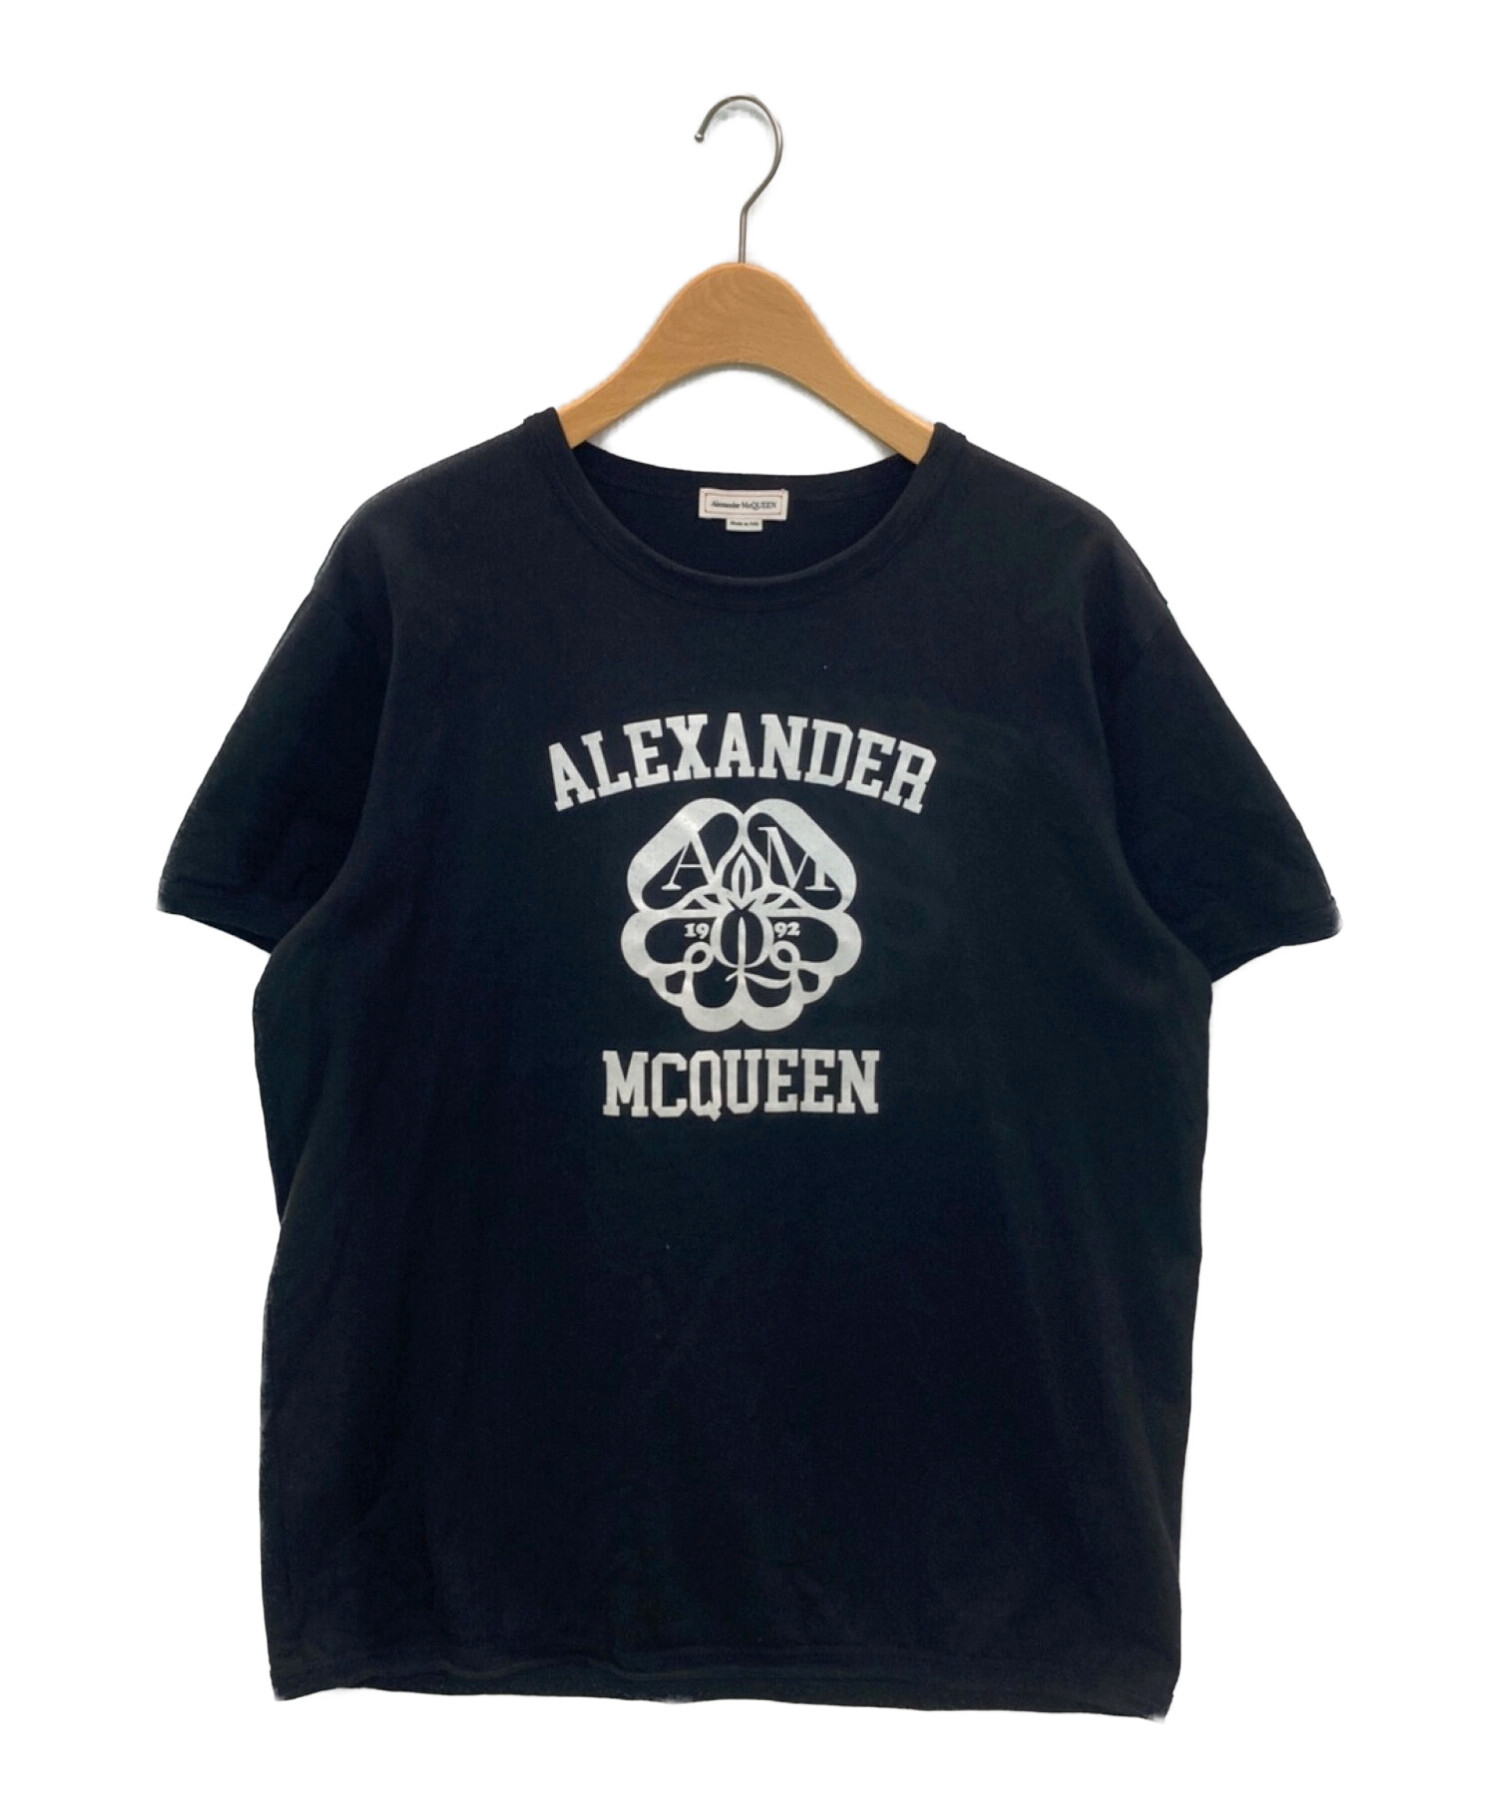 【未着用】Alexander McQueen メンズ 長袖Tシャツ タグ付きAlexander